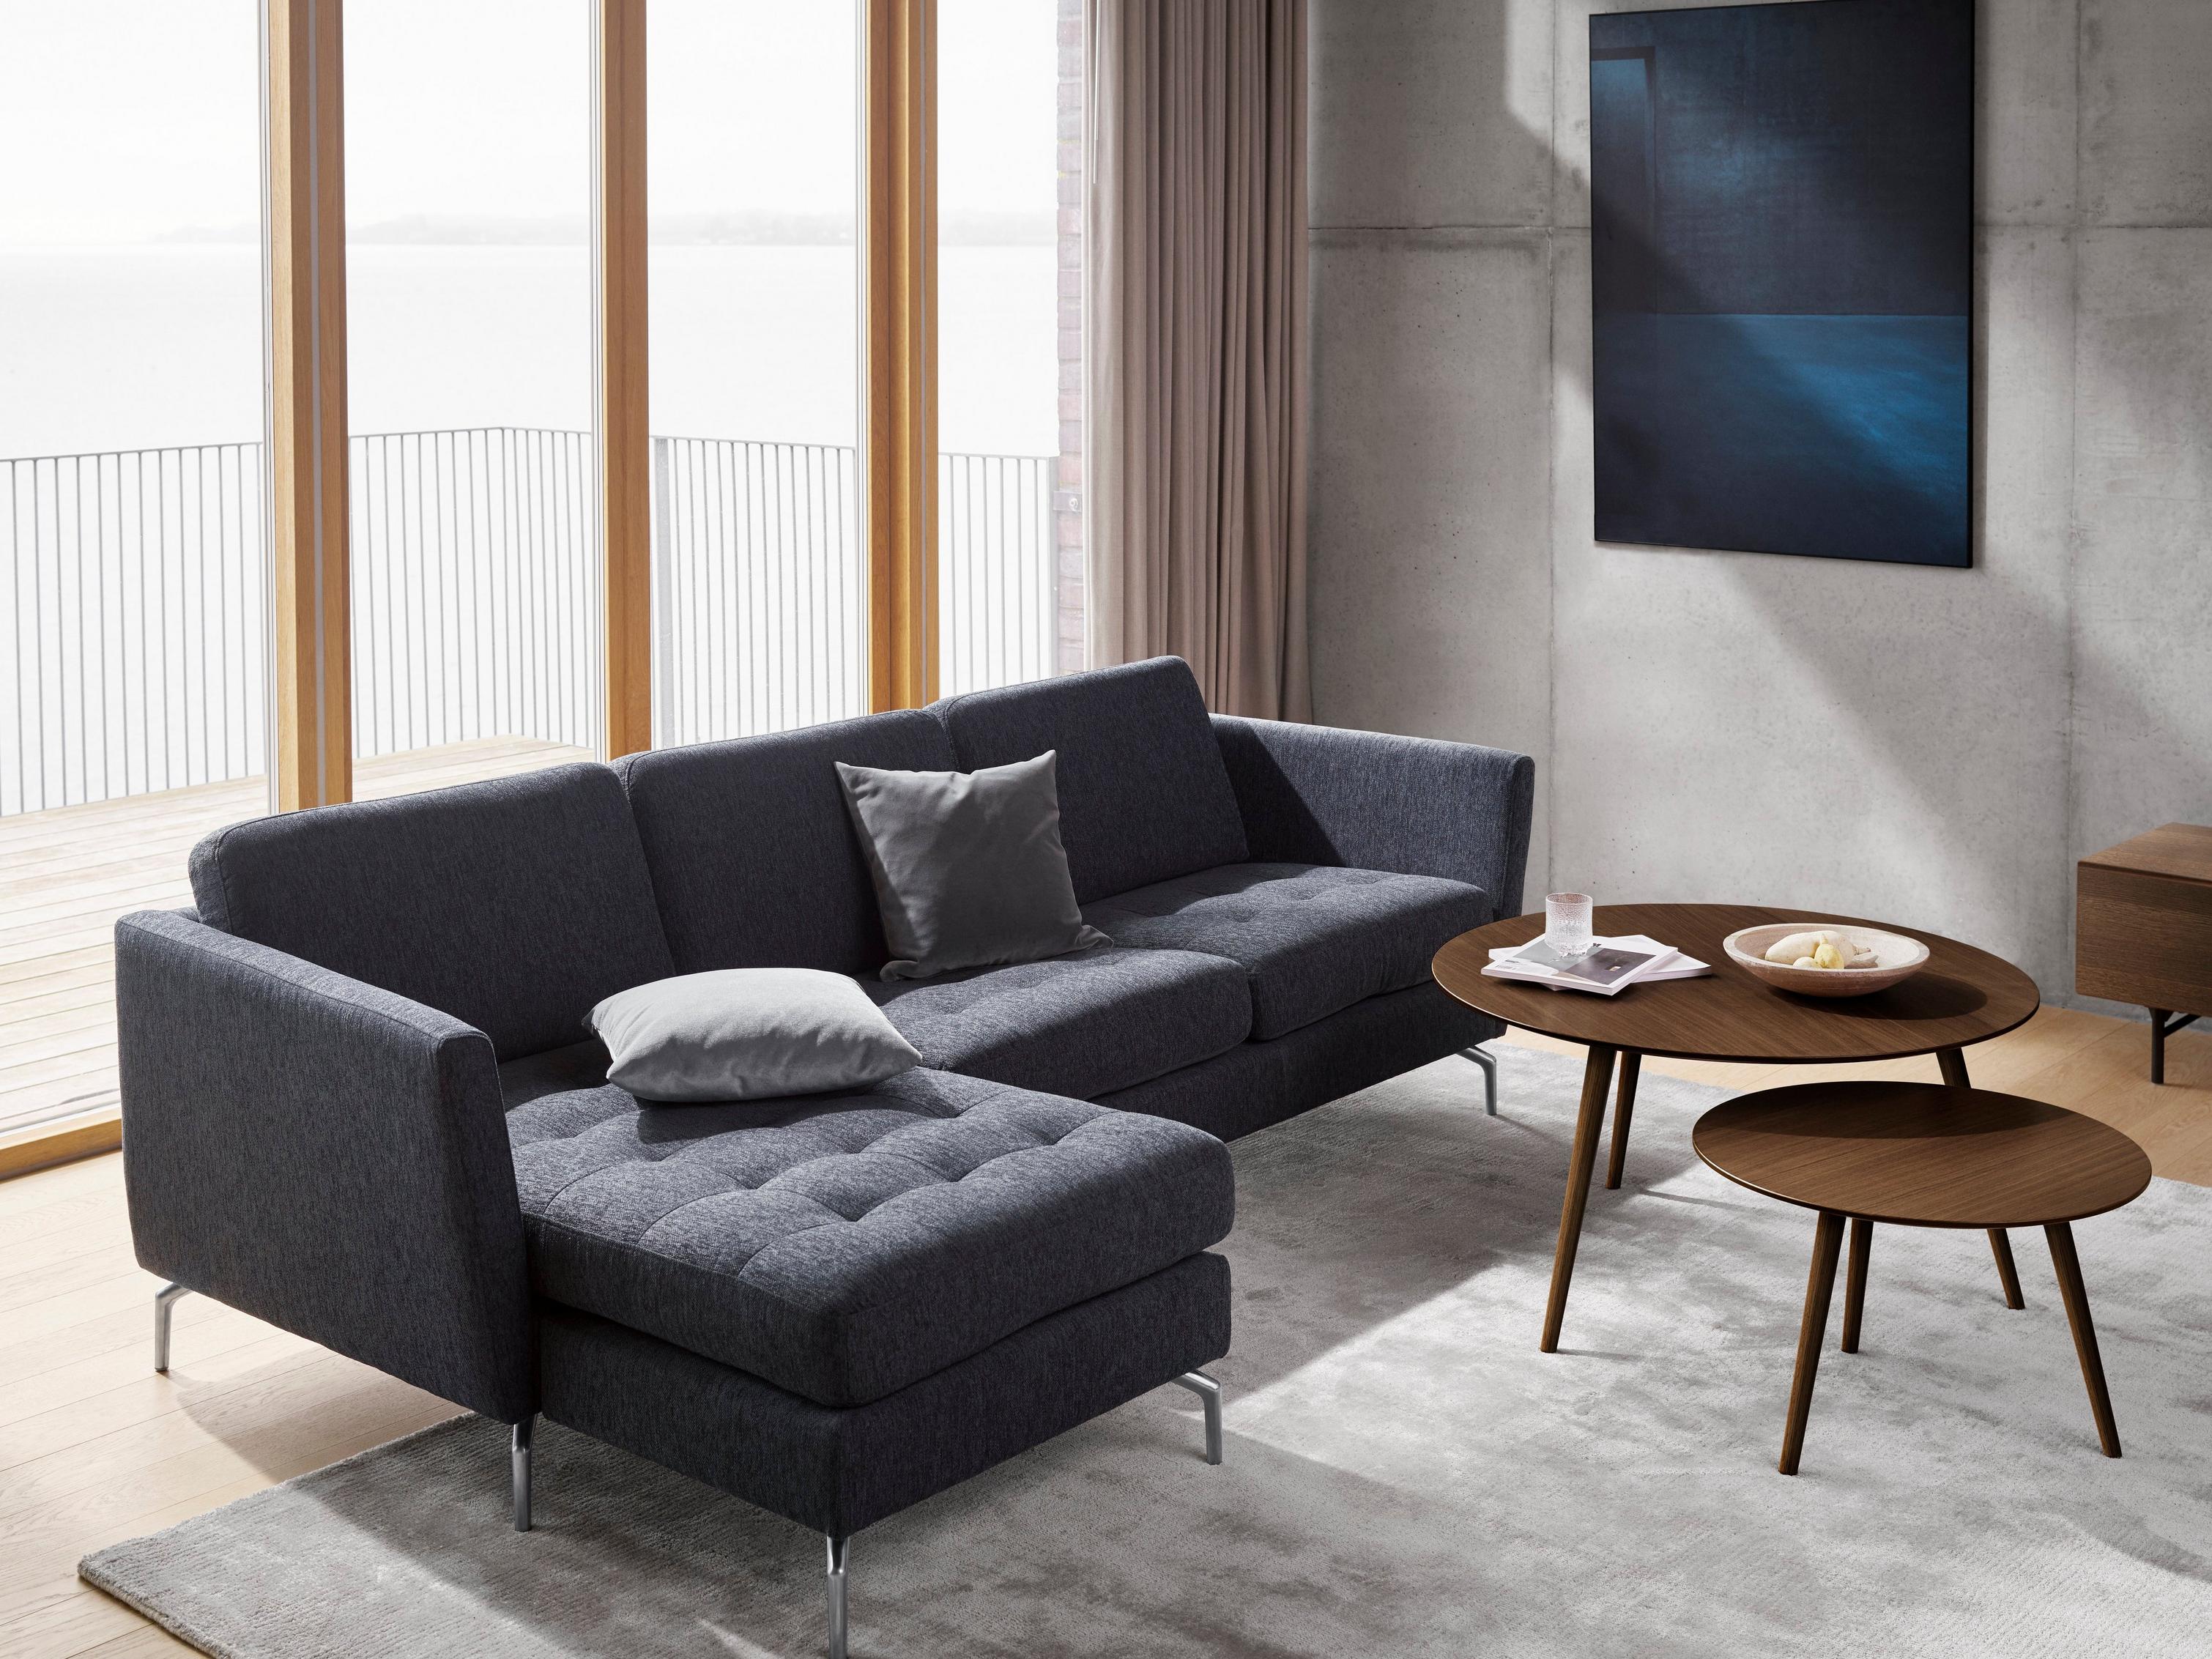 Entspannendes Wohnzimmer mit dem Osaka Sofa in blauem Bristol und dem Bornholm Couchtisch in dunklem Eichenfurnier.